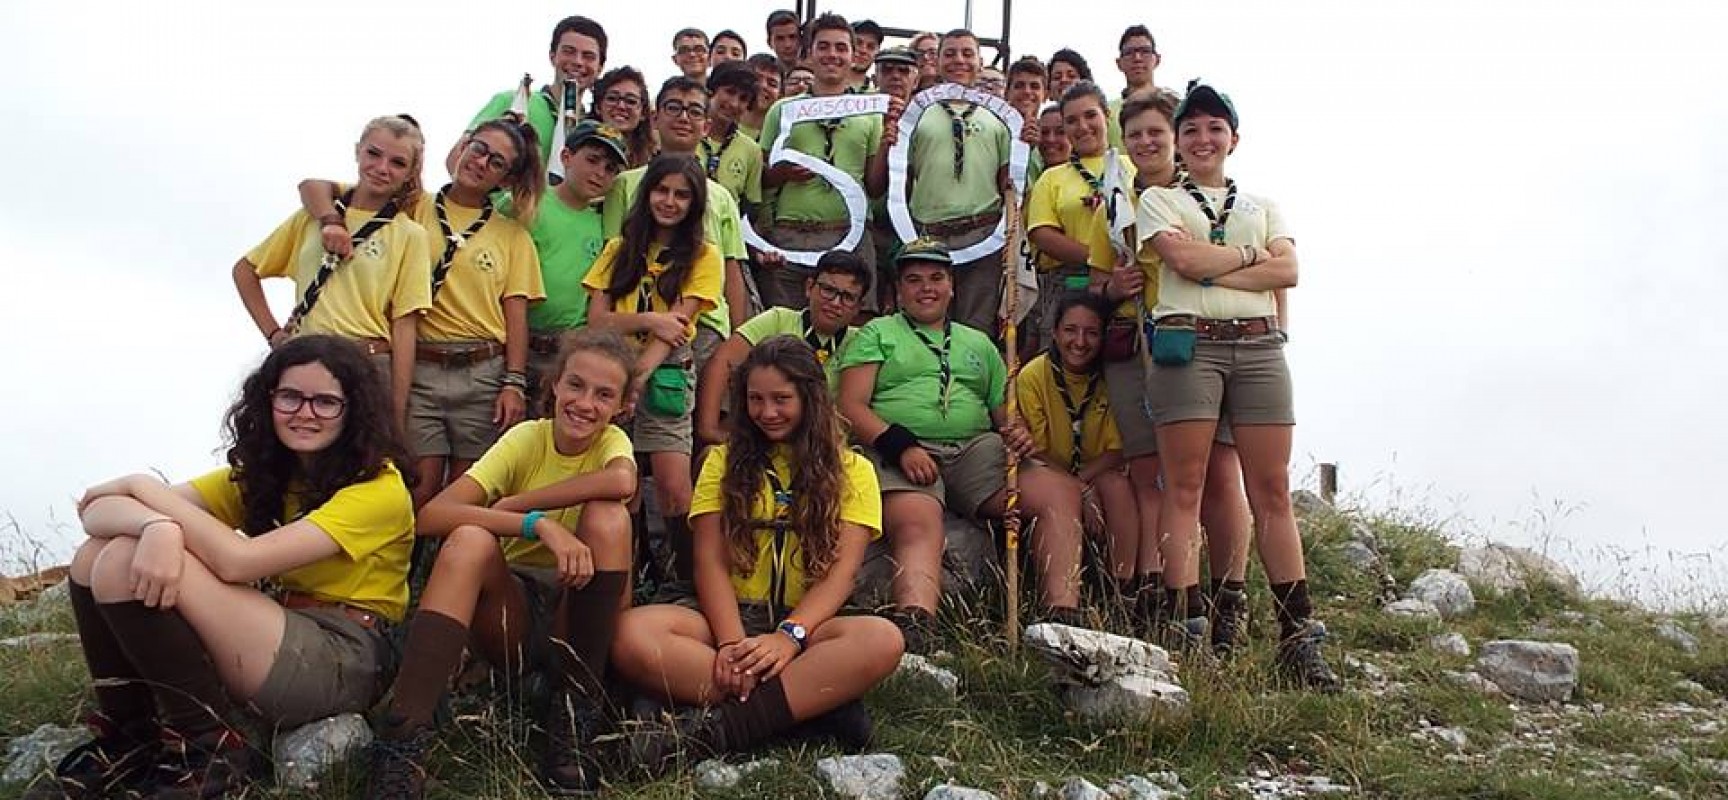 “Una giornata con gli scout”, il gruppo scout biscegliese si prepara a celebrare i suoi 50 anni di attività